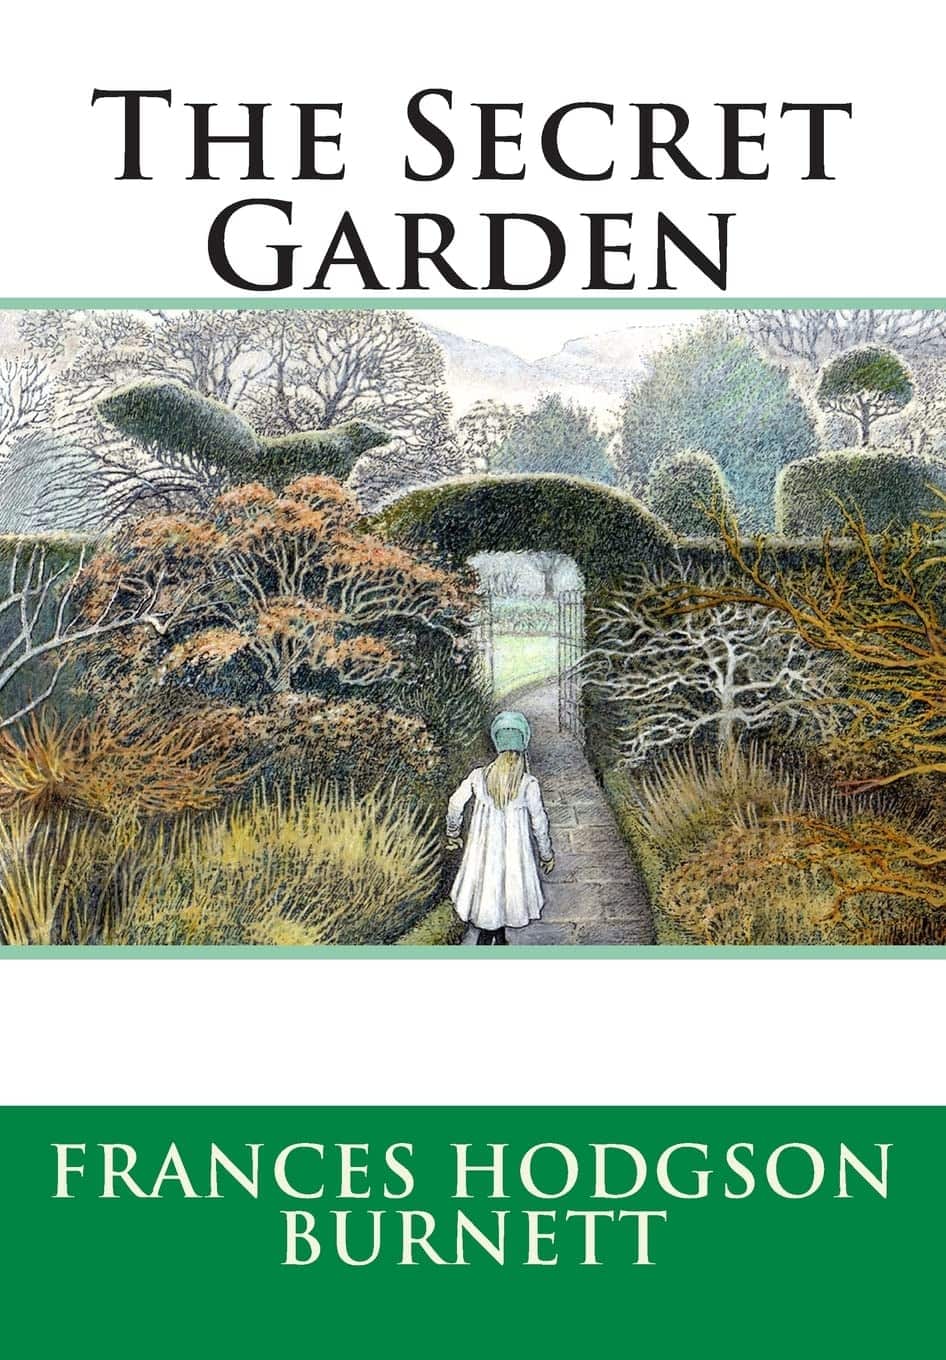 "The Secret Garden" by Frances Hodgson Burnett